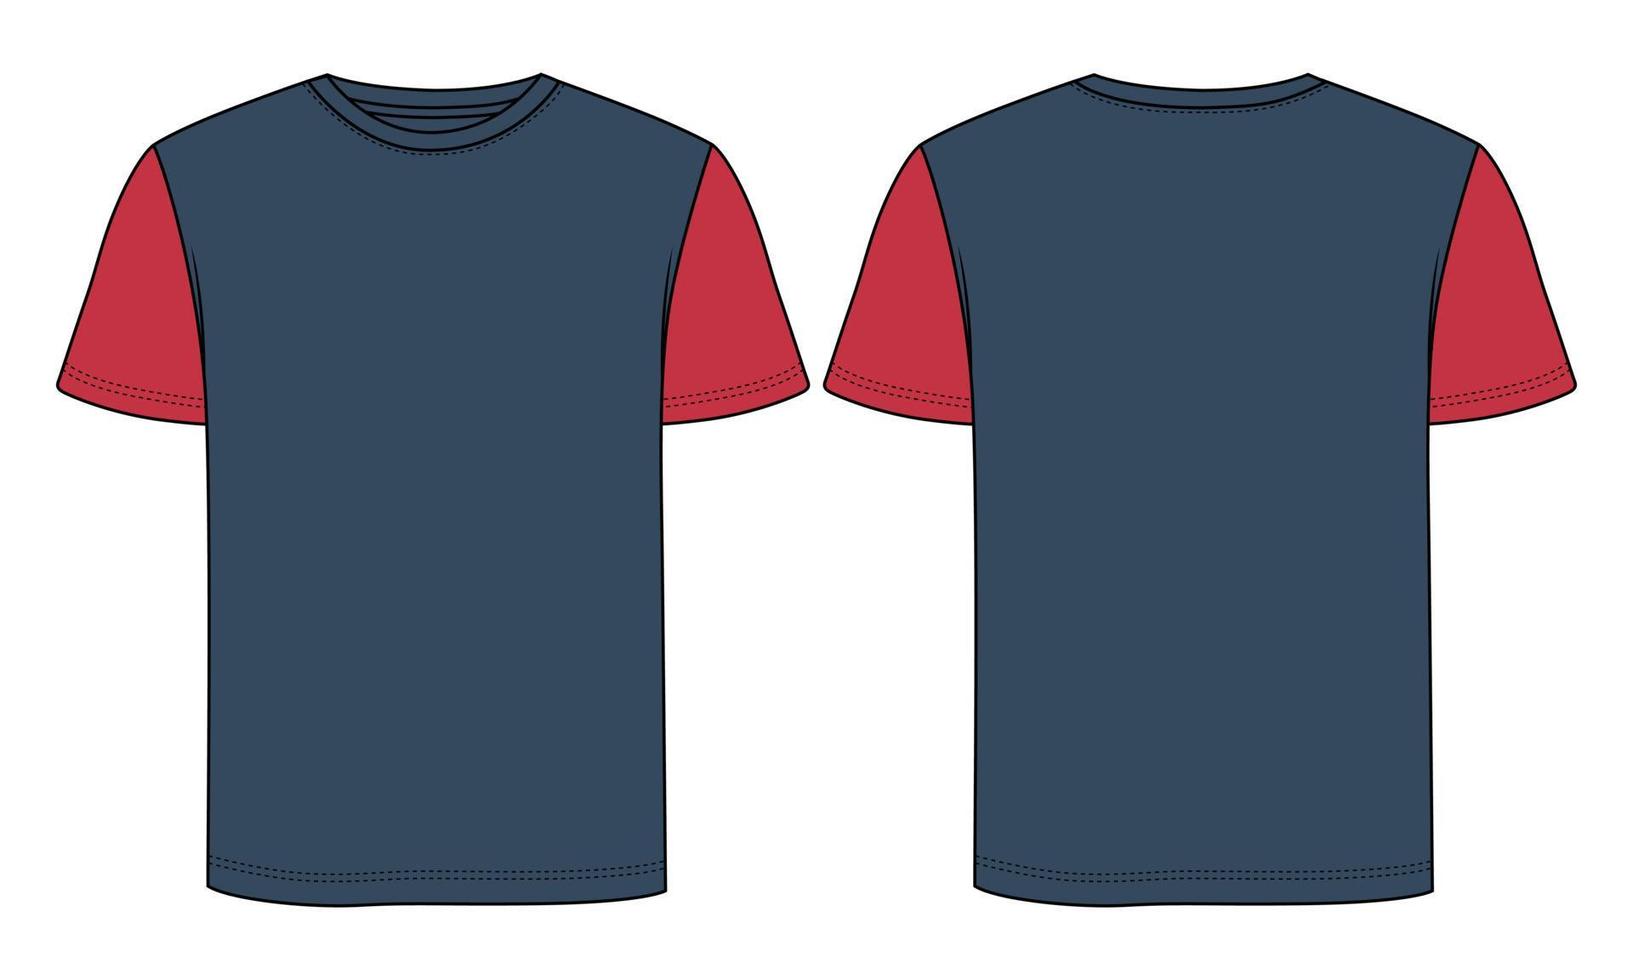 due toni blu navy, colore rosso vestibilità regolare manica corta t-shirt basic moda tecnica disegno piatto illustrazione vettoriale modello vista frontale e posteriore. disegno di abbigliamento mock up illustrazione del disegno.